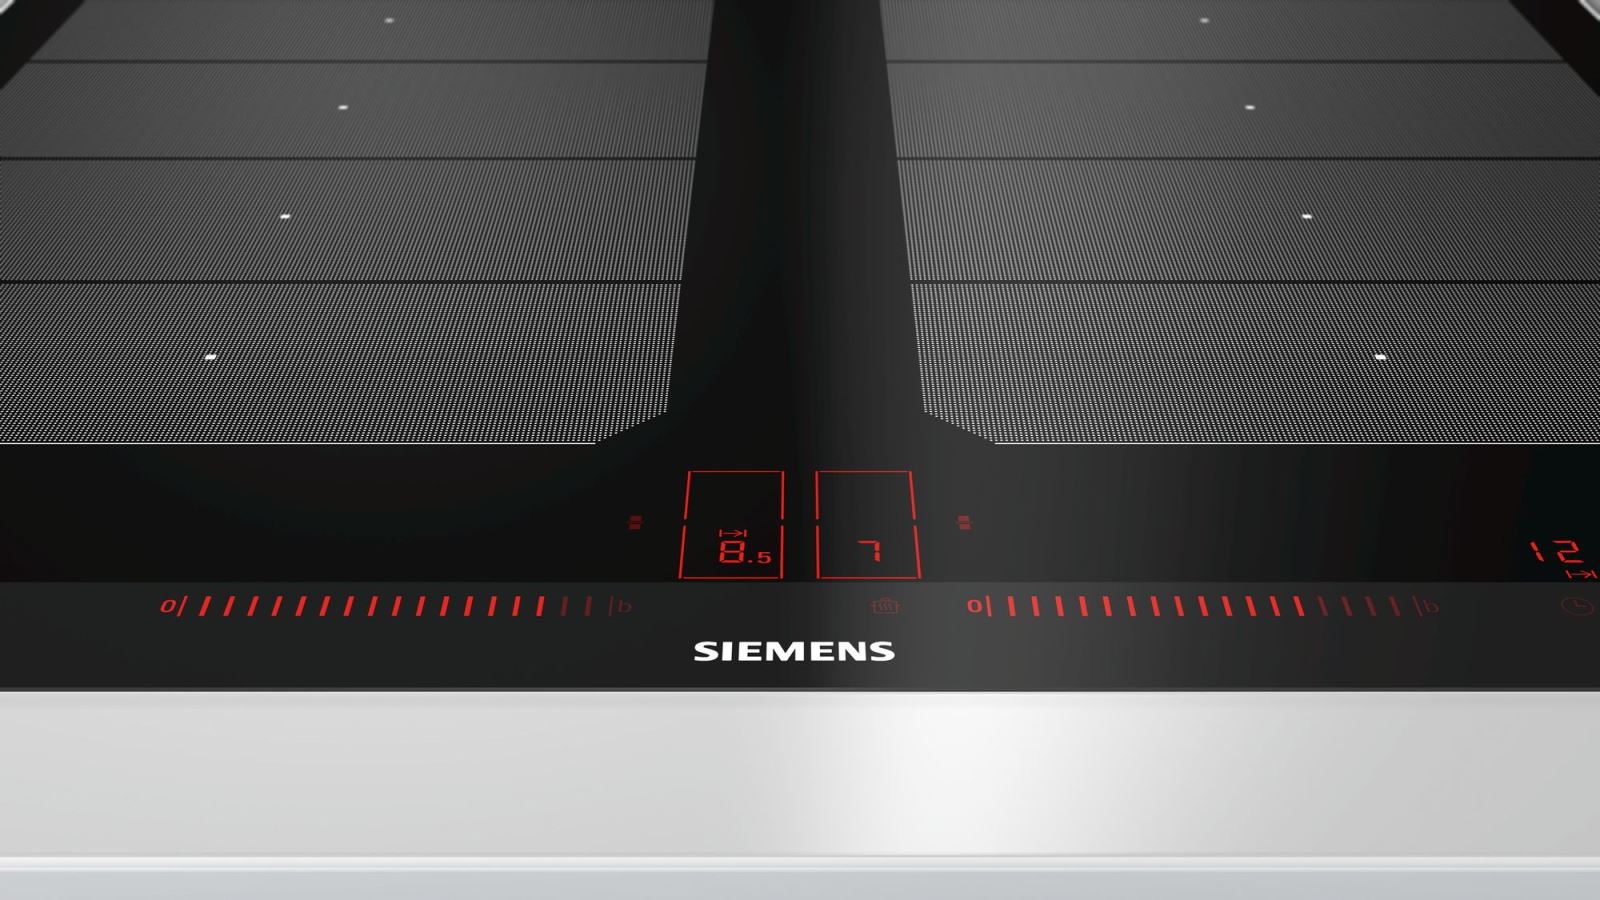 Bếp Từ Siemens EX675LXC1E, Bếp Từ Siemens EX775LYE4E, Bếp Từ Siemens EU631BJB2E, Bếp Từ Siemens EH651BJB1E, Bếp Từ Siemens EH651FDC1E, Bếp Từ Siemens EH675LDC1E, Bếp Từ Siemens EH675FJC1E, Bếp Từ Siemens EH775LDC1E, Bếp Từ Siemens EX875LEC1E